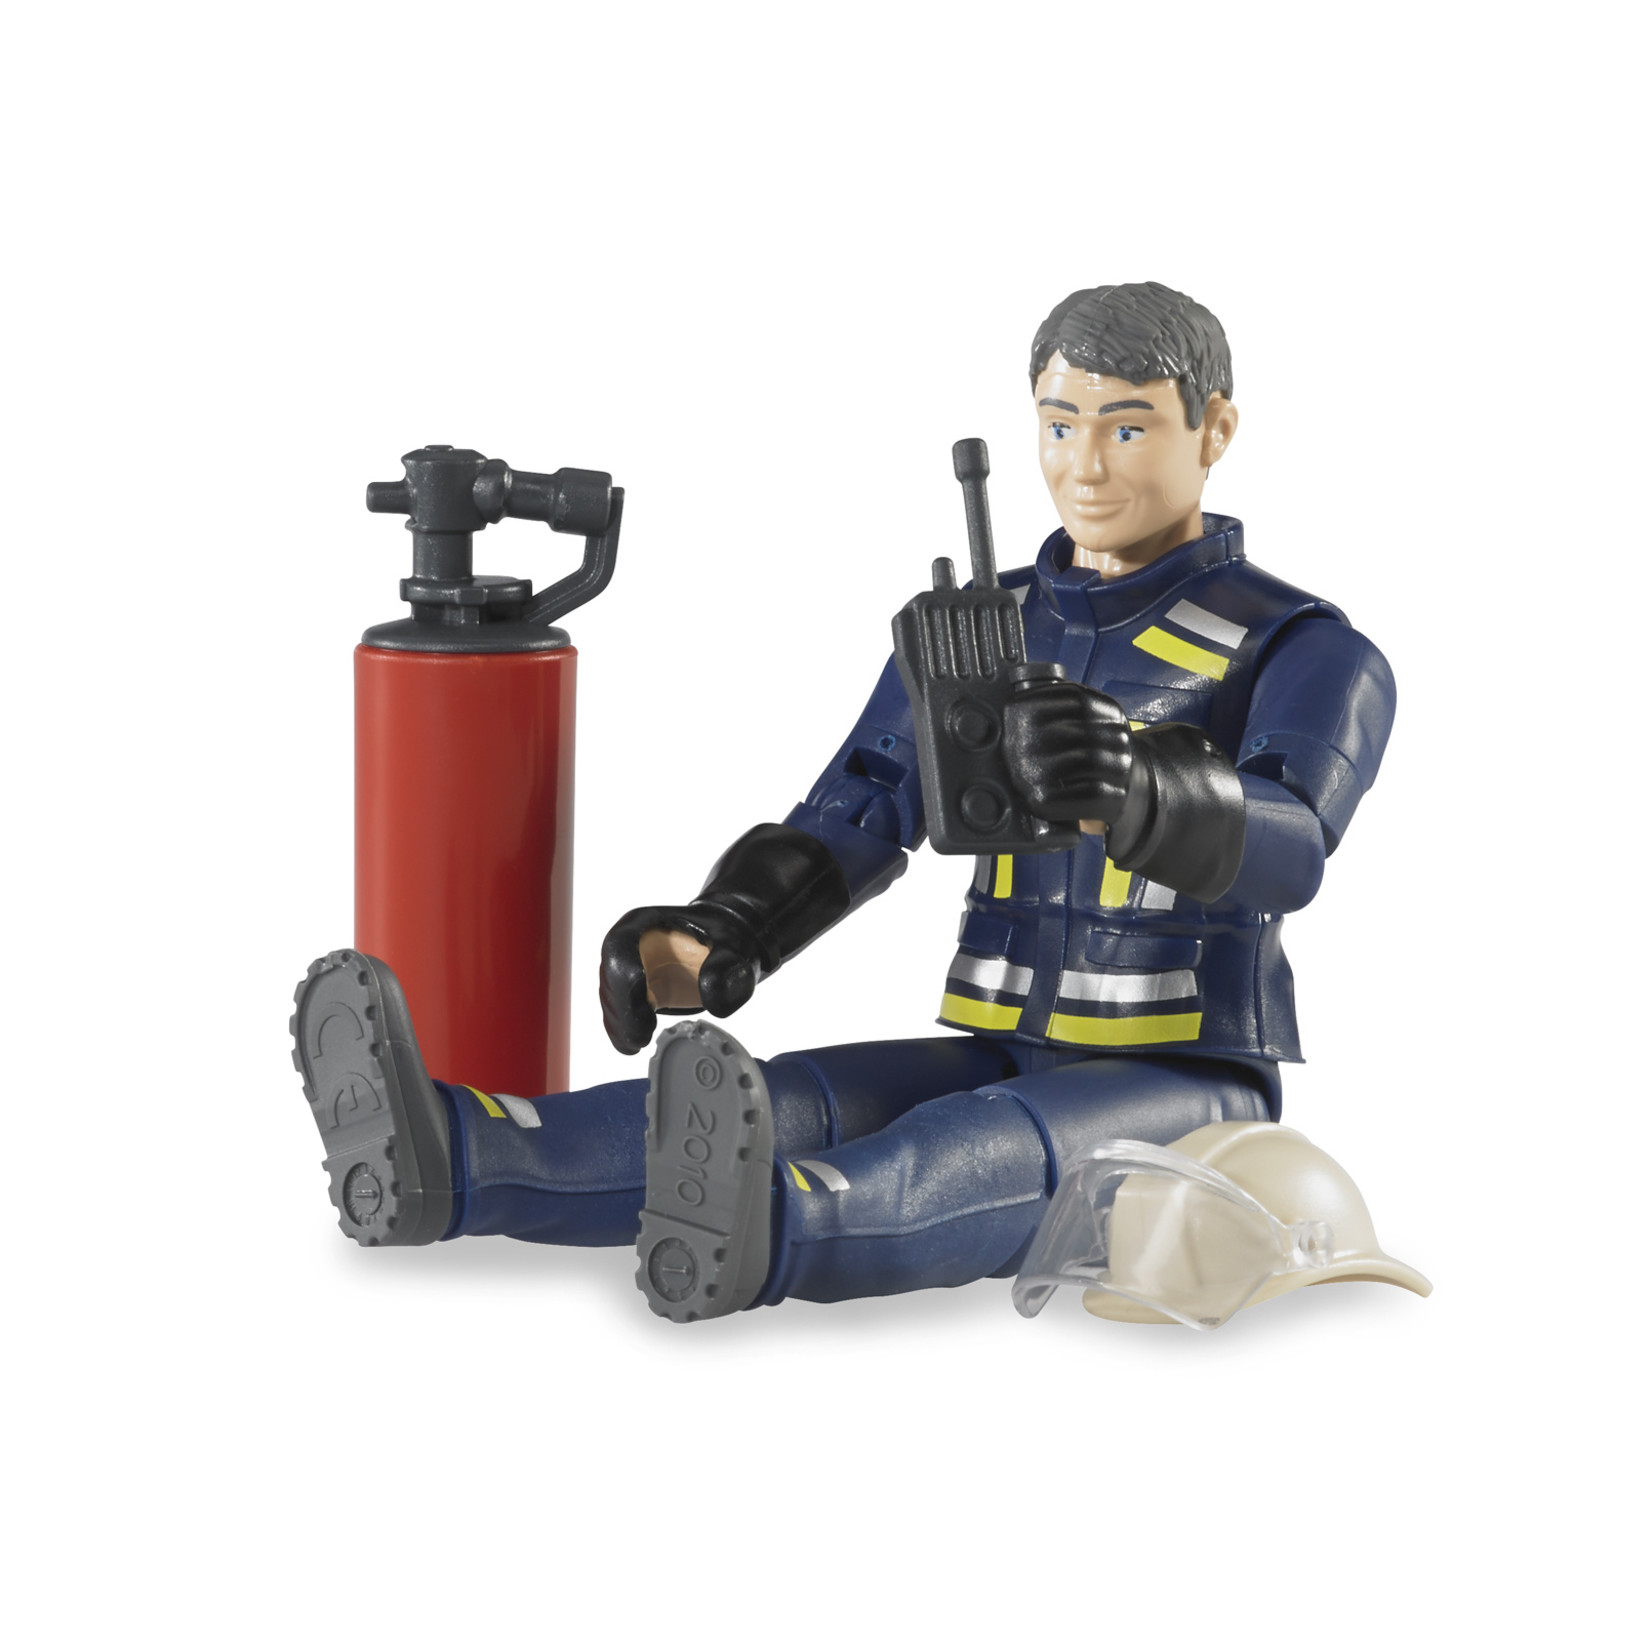 Bruder Bruder 60100 - Pompier avec accessoires